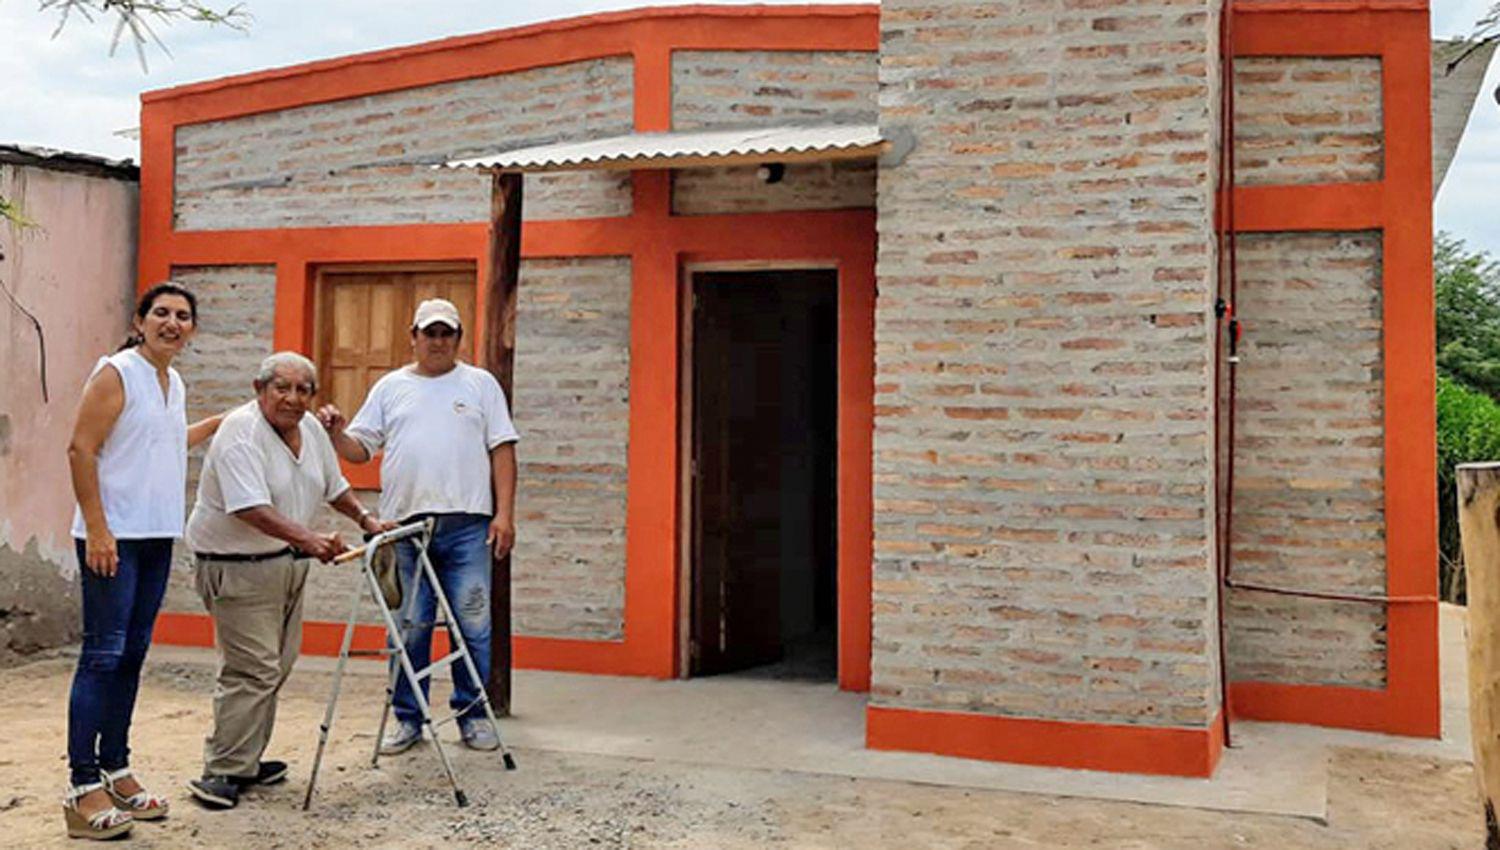 Entregaraacuten 30 viviendas sociales y ecoloacutegicas a familias de La Cantildeada